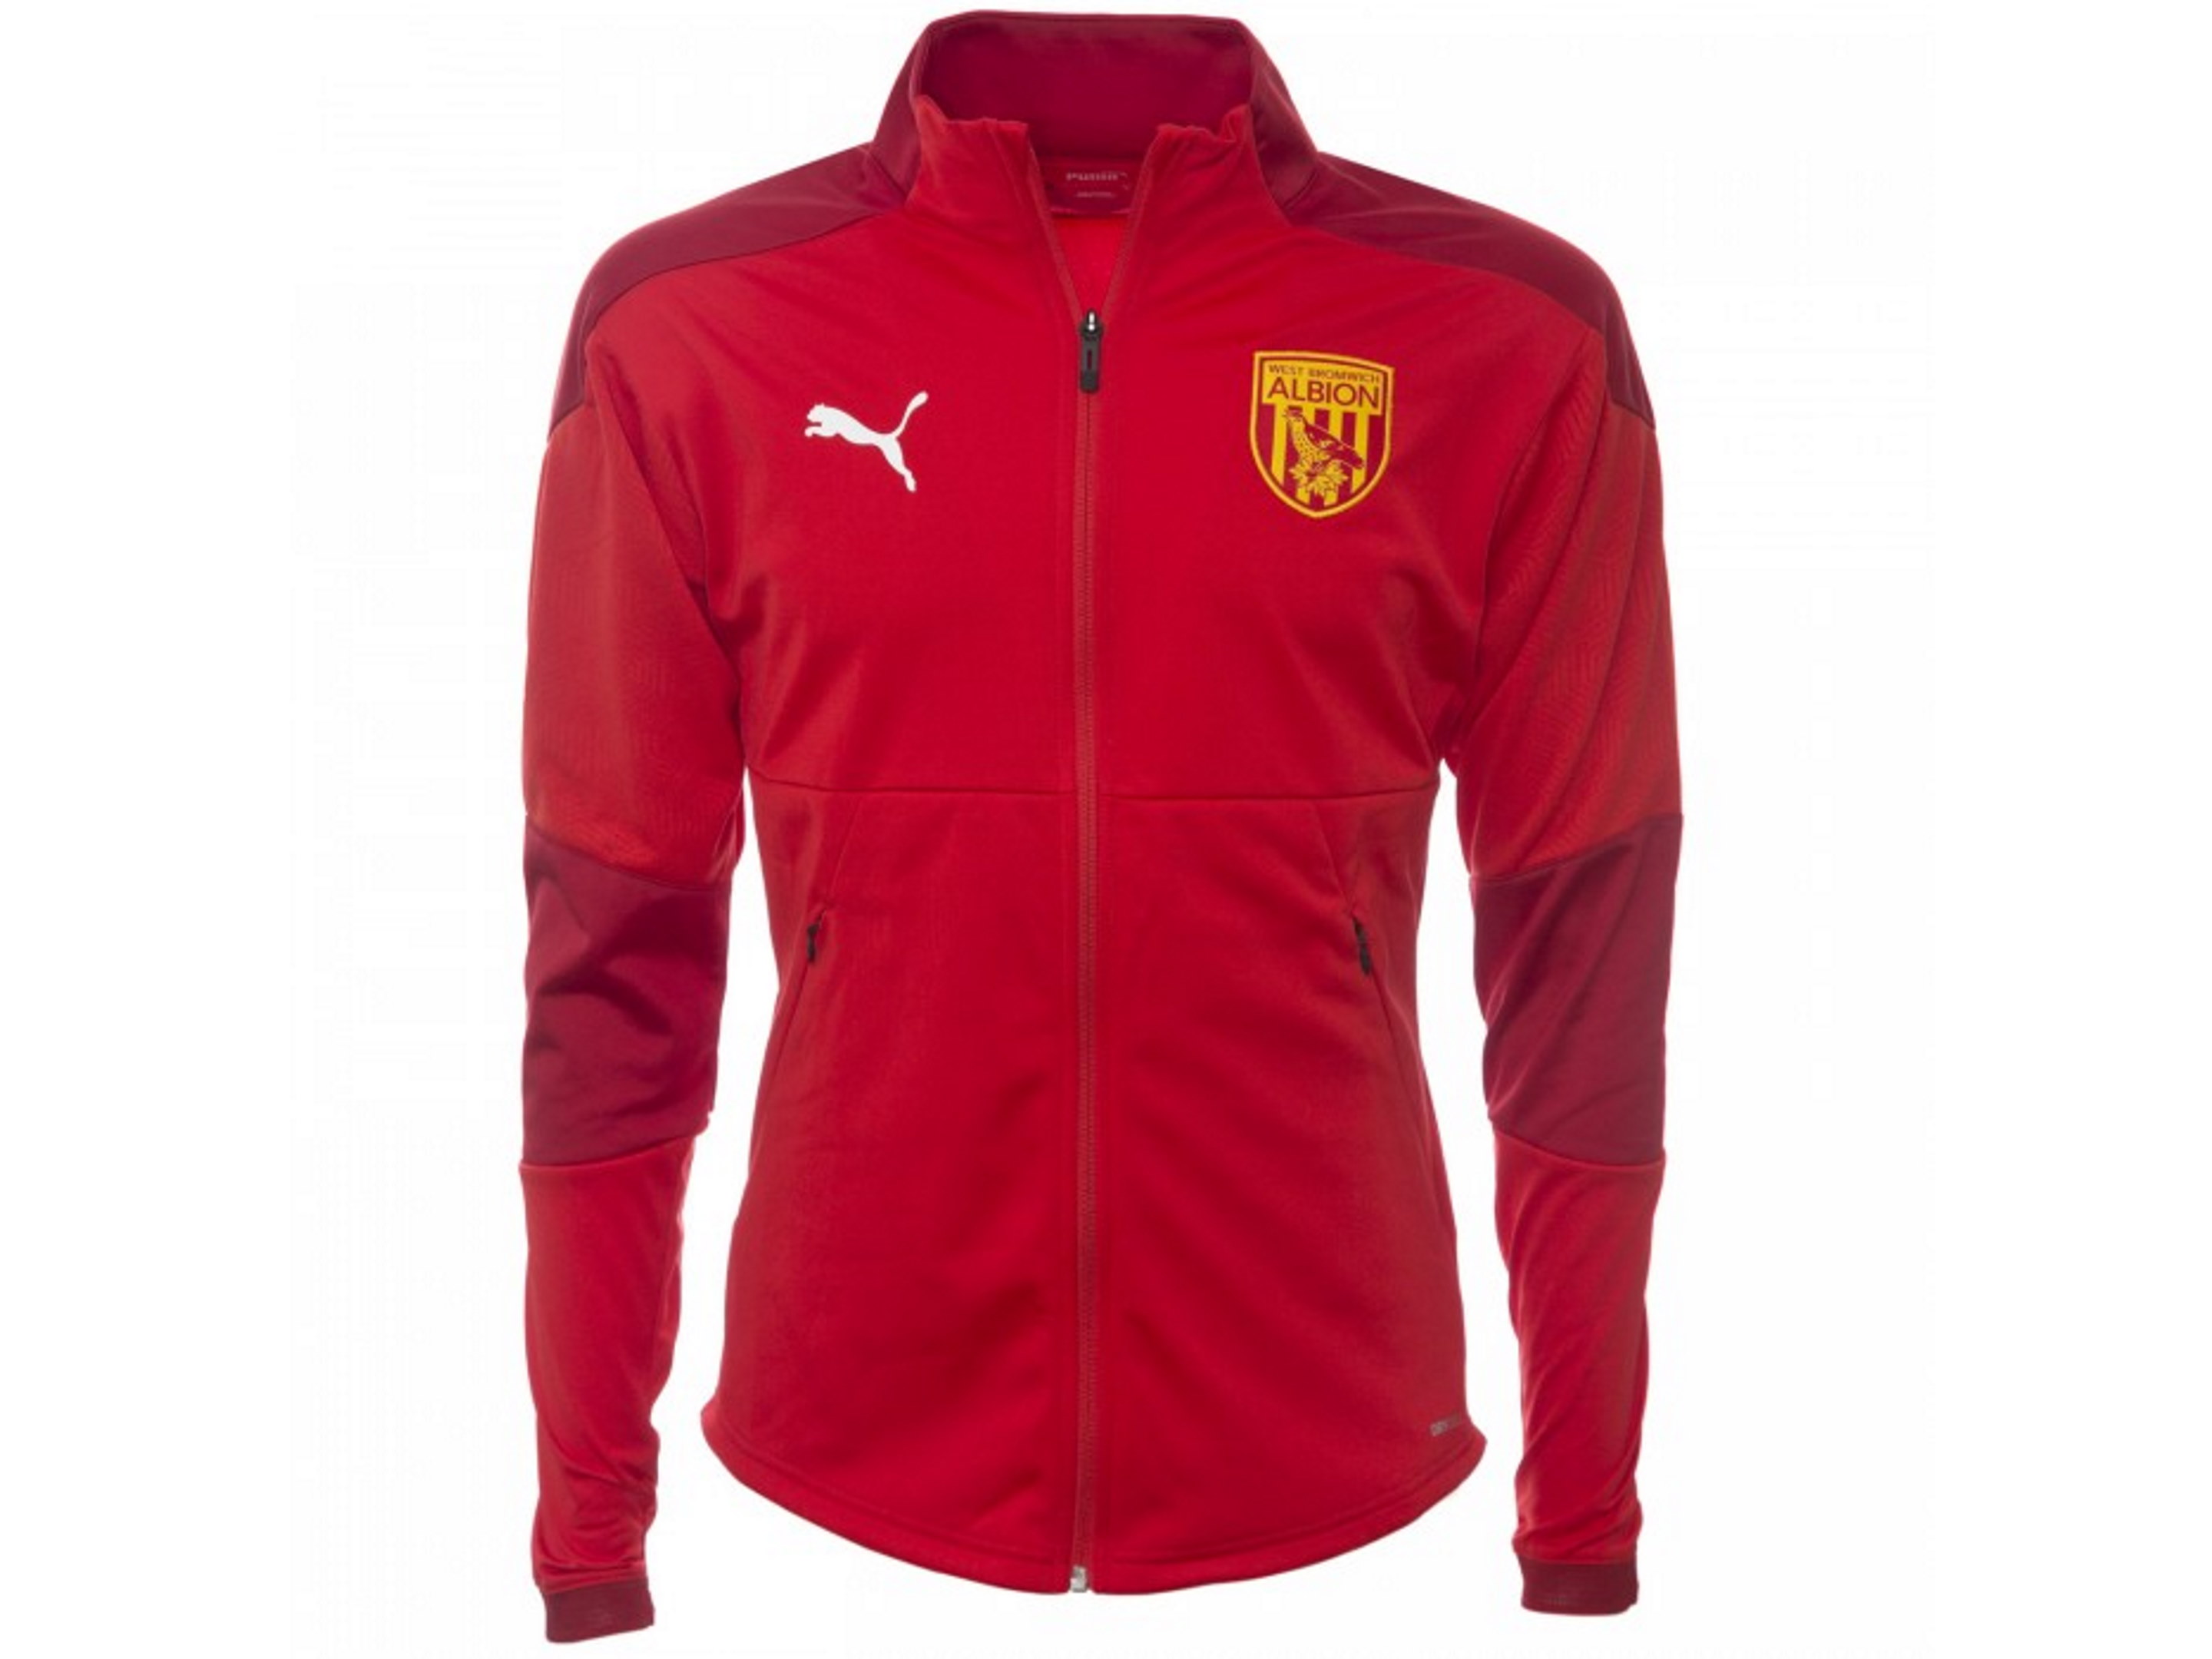 Red Trainingwear Jacket